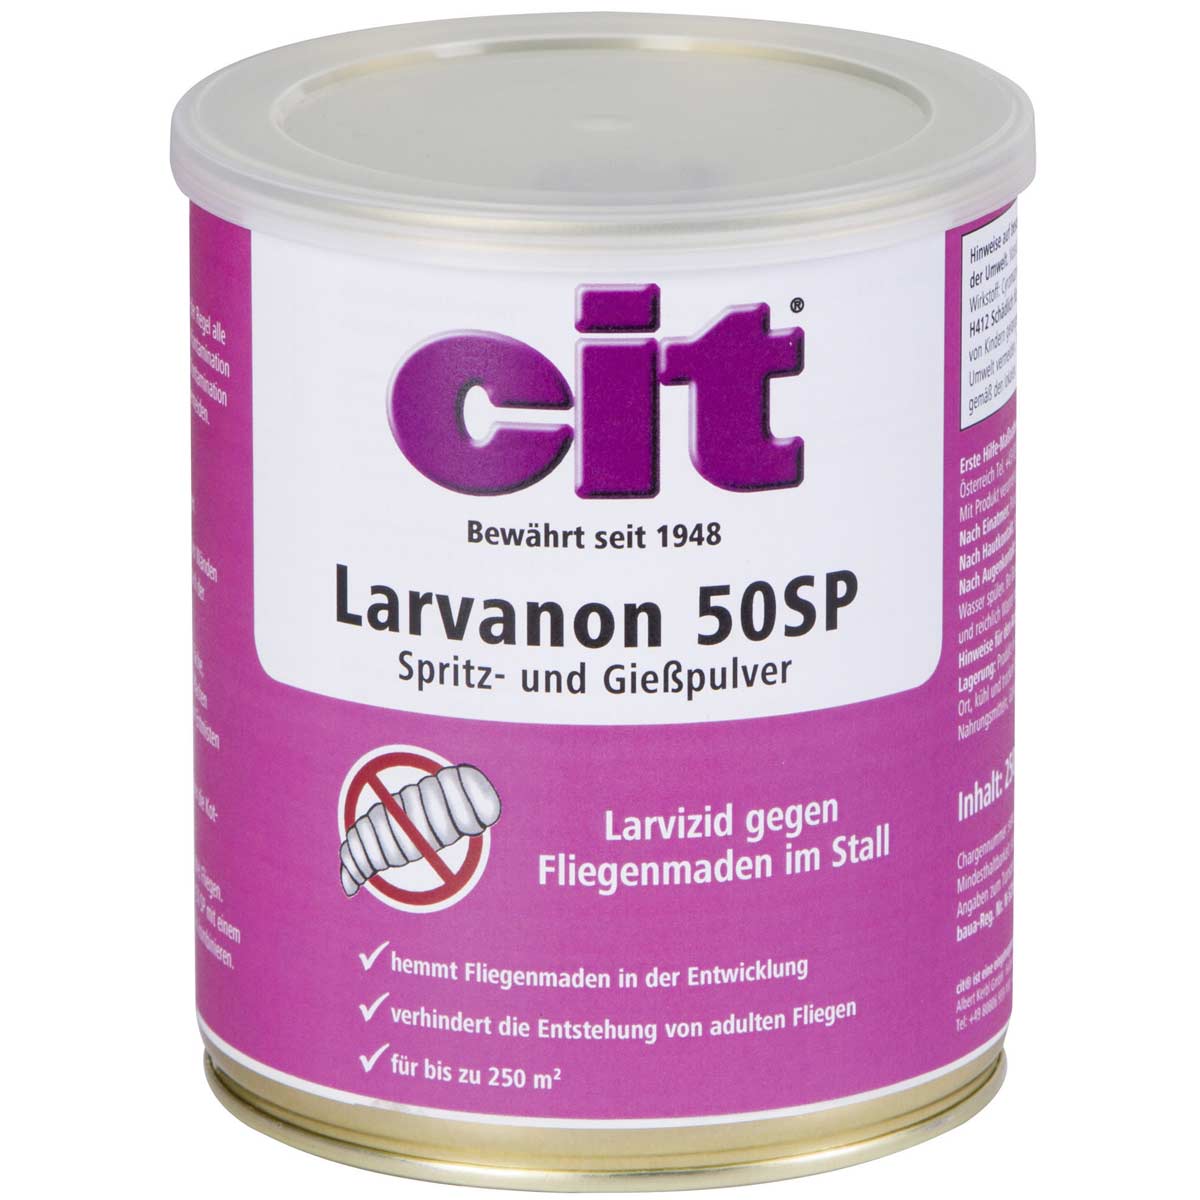 Cit Larvizid Larvanon Spritzpulver 50 SP